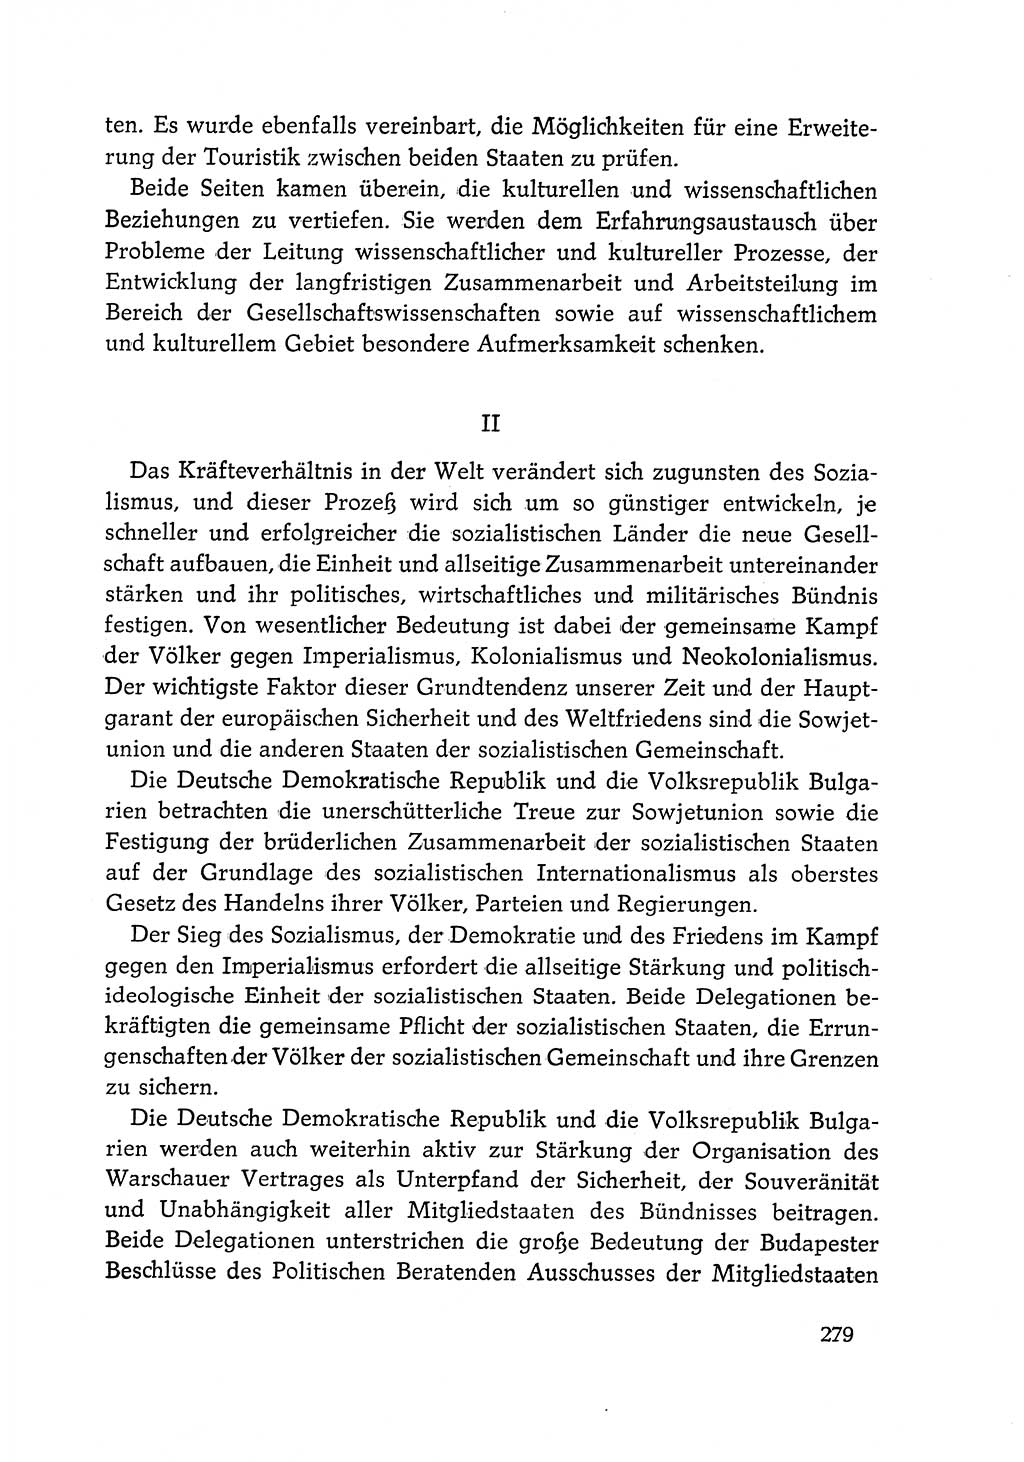 Dokumente der Sozialistischen Einheitspartei Deutschlands (SED) [Deutsche Demokratische Republik (DDR)] 1968-1969, Seite 279 (Dok. SED DDR 1968-1969, S. 279)